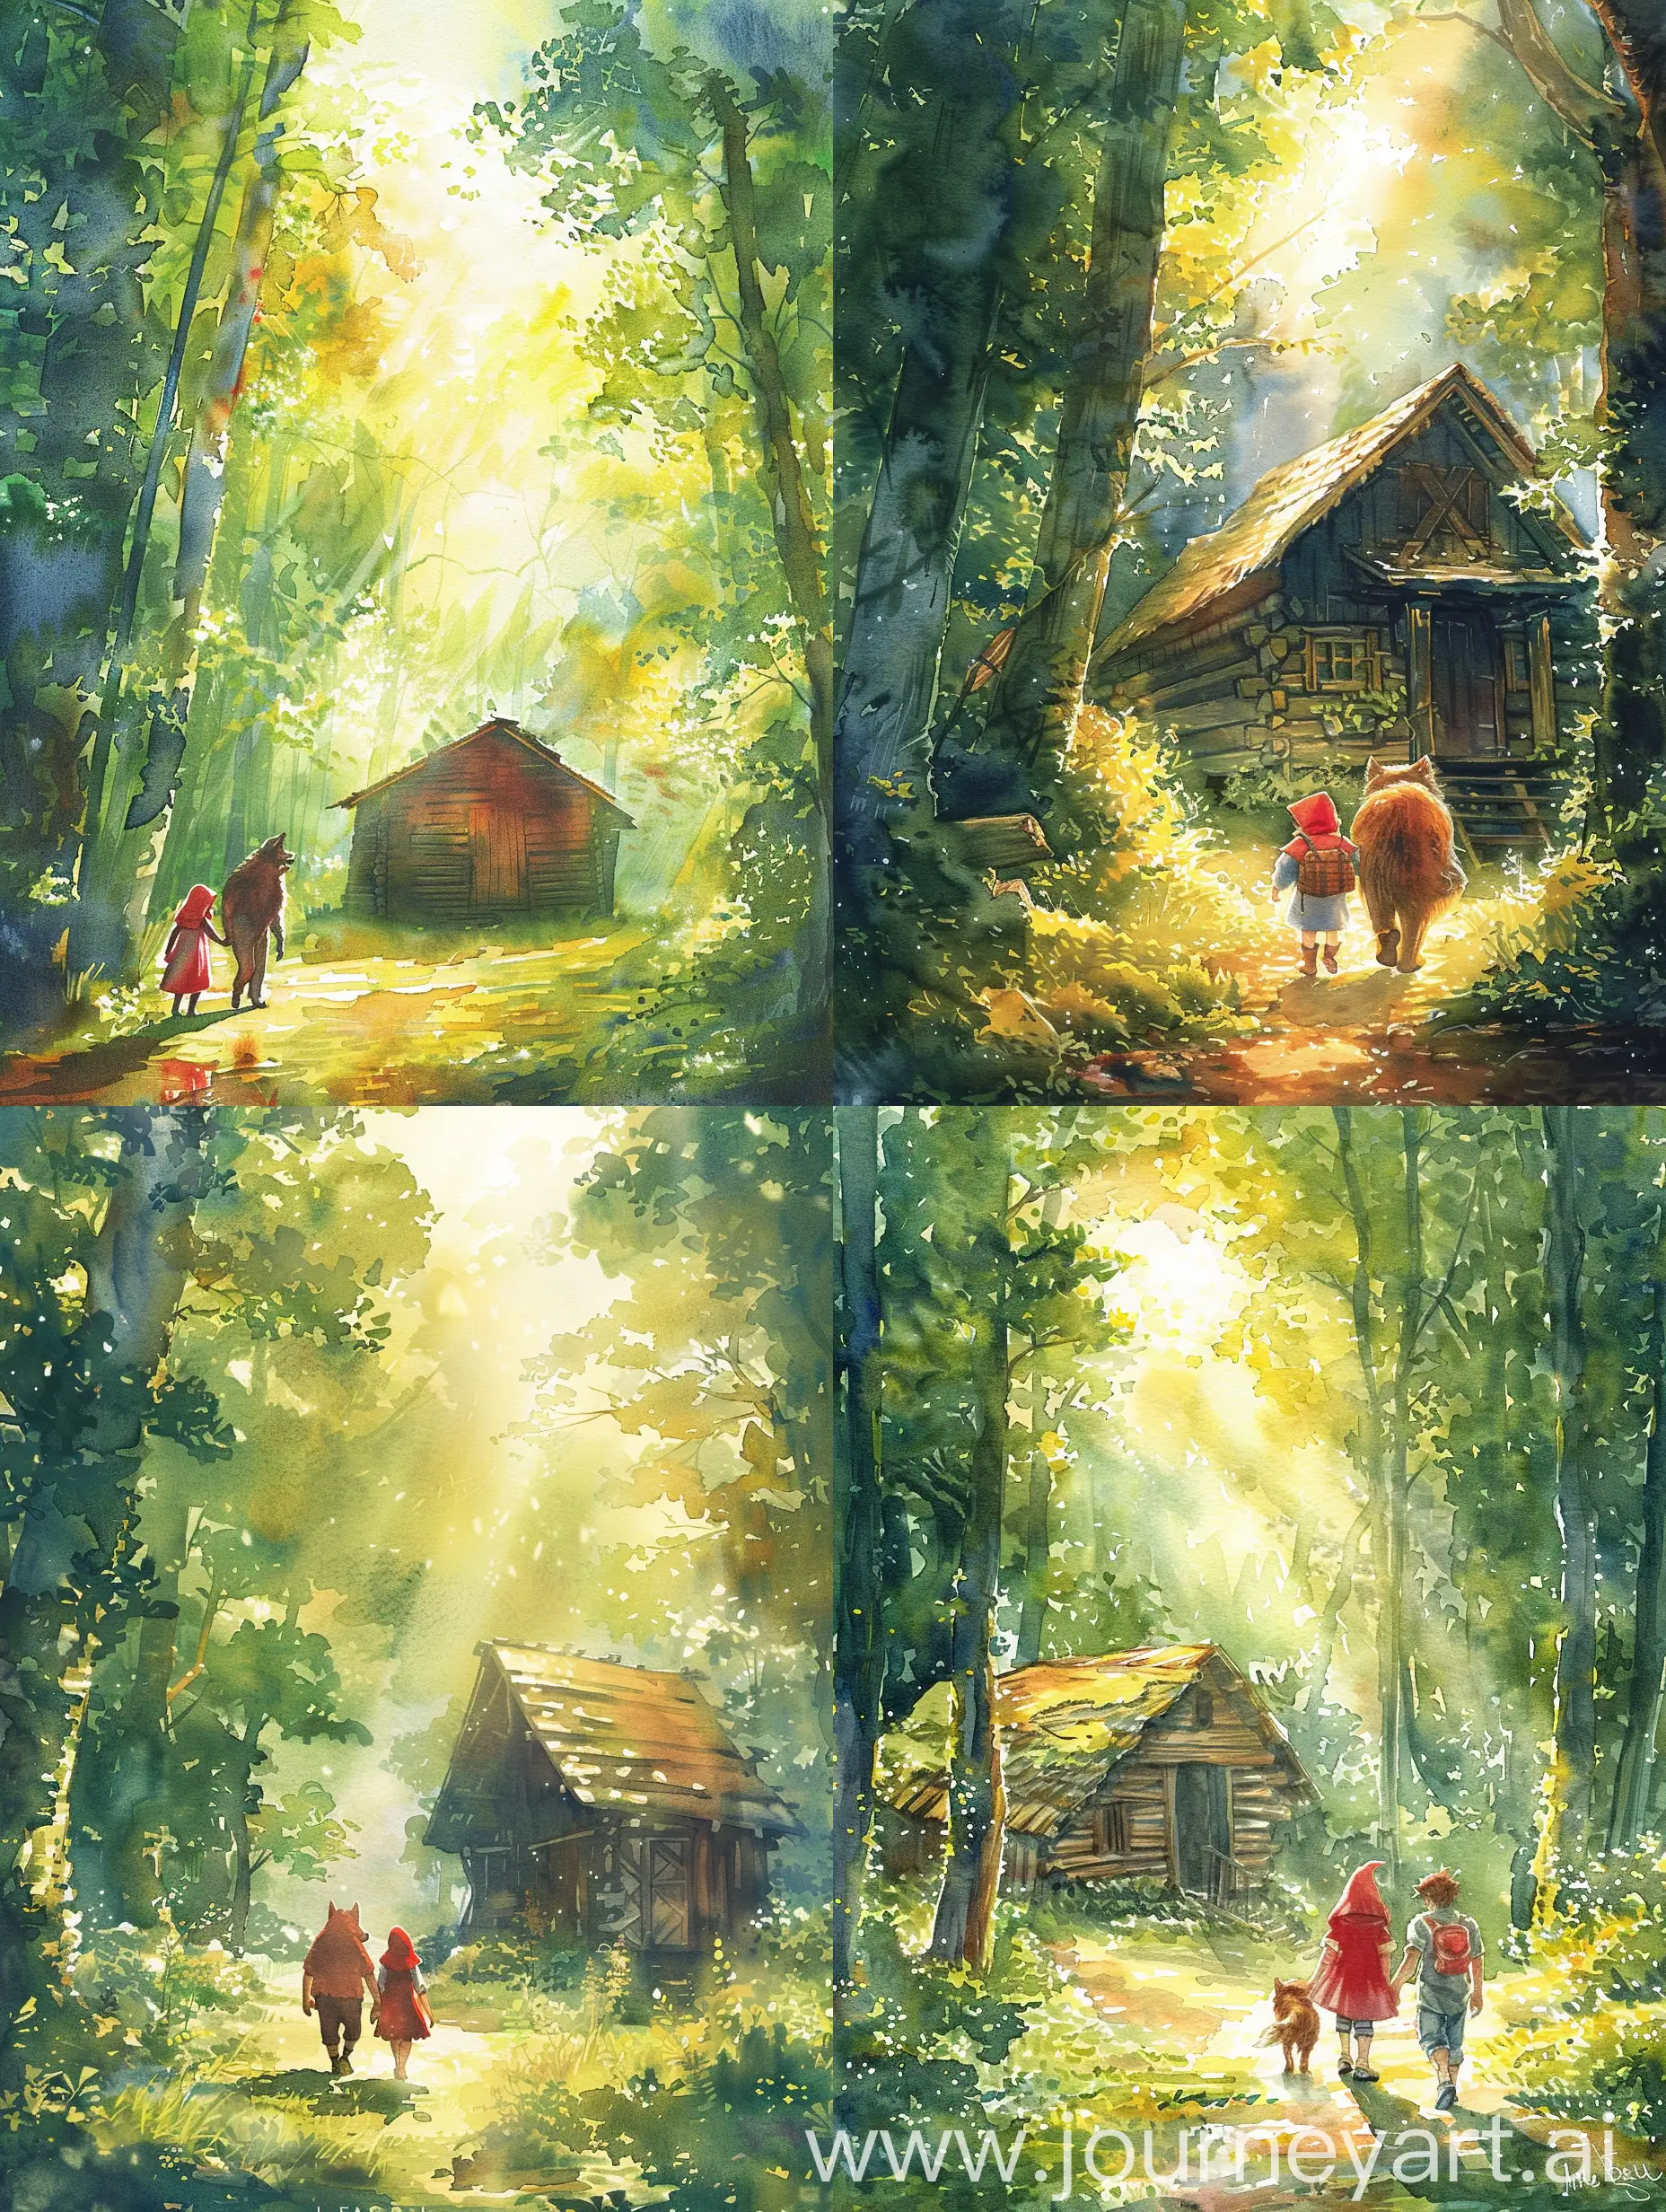 生成一张水彩的书籍封面图片，内容是小红帽和大灰狼在郁郁葱葱的森林里，阳光明媚，他们一起走向一个森林里的小木屋